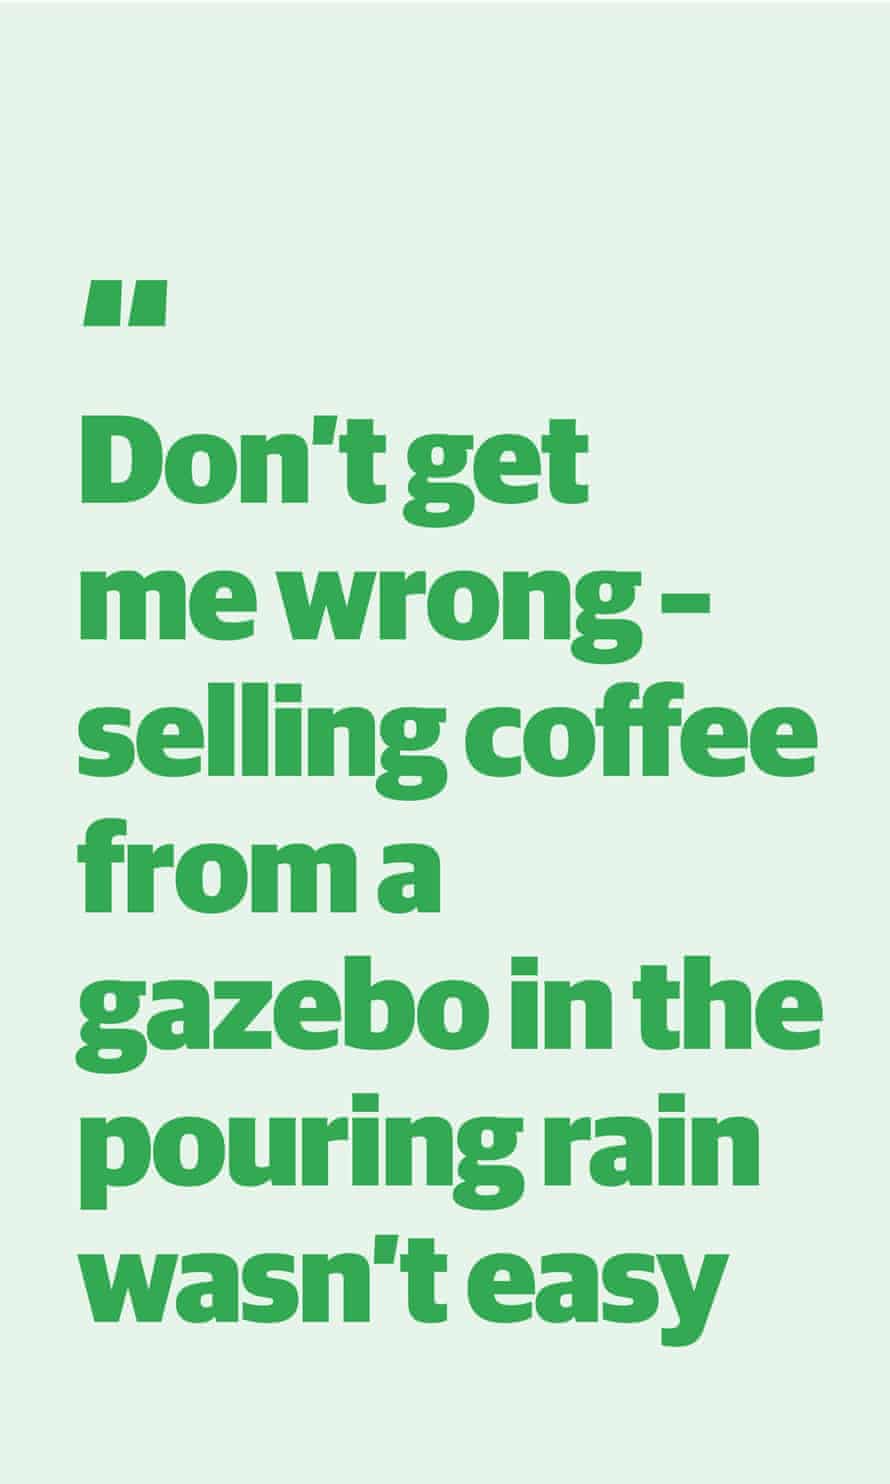 Zitat von Mika Johnson: "Versteh mich nicht falsch - Kaffee aus einem Pavillon im strömenden Regen zu verkaufen war nicht einfach"